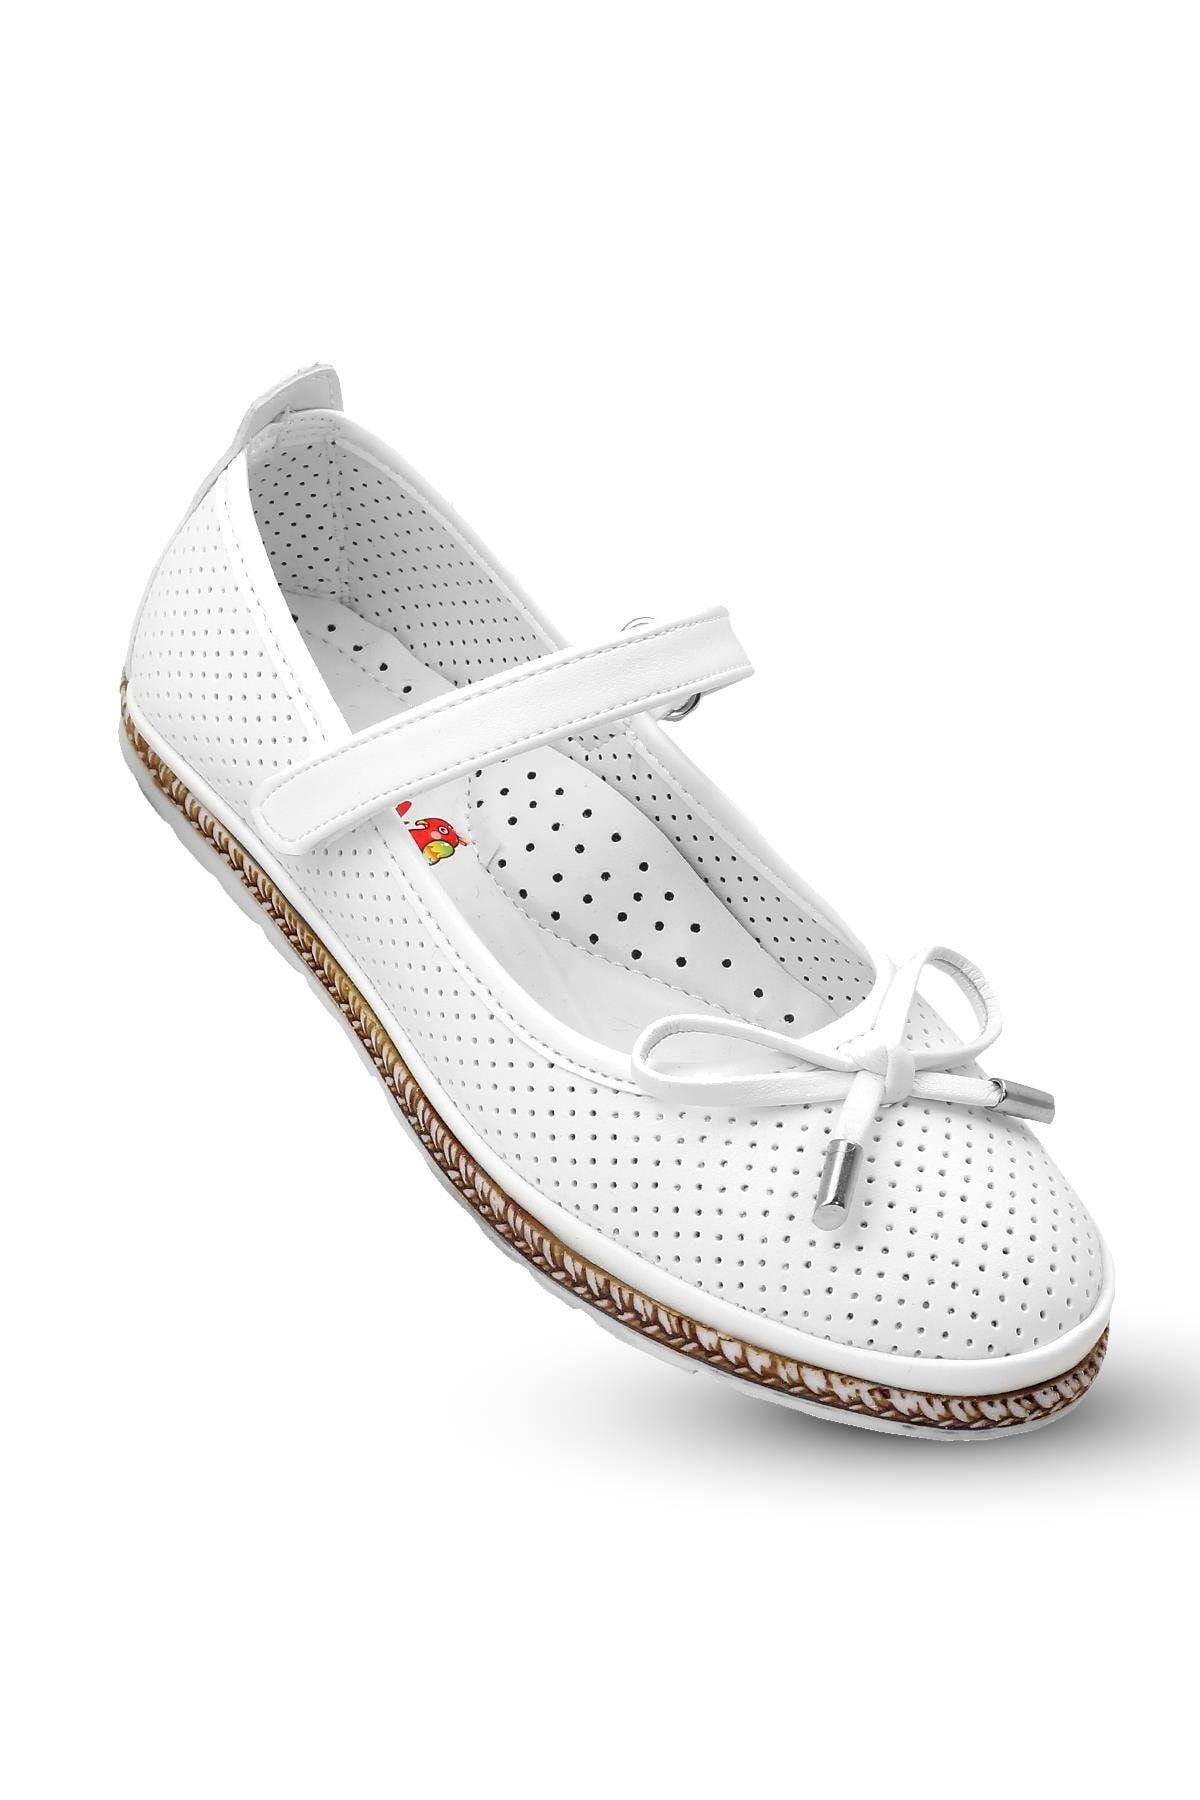 KAPTAN JUNIOR Kız Çocuk Beyaz Ortopedik Ayakkabı Spor Babet